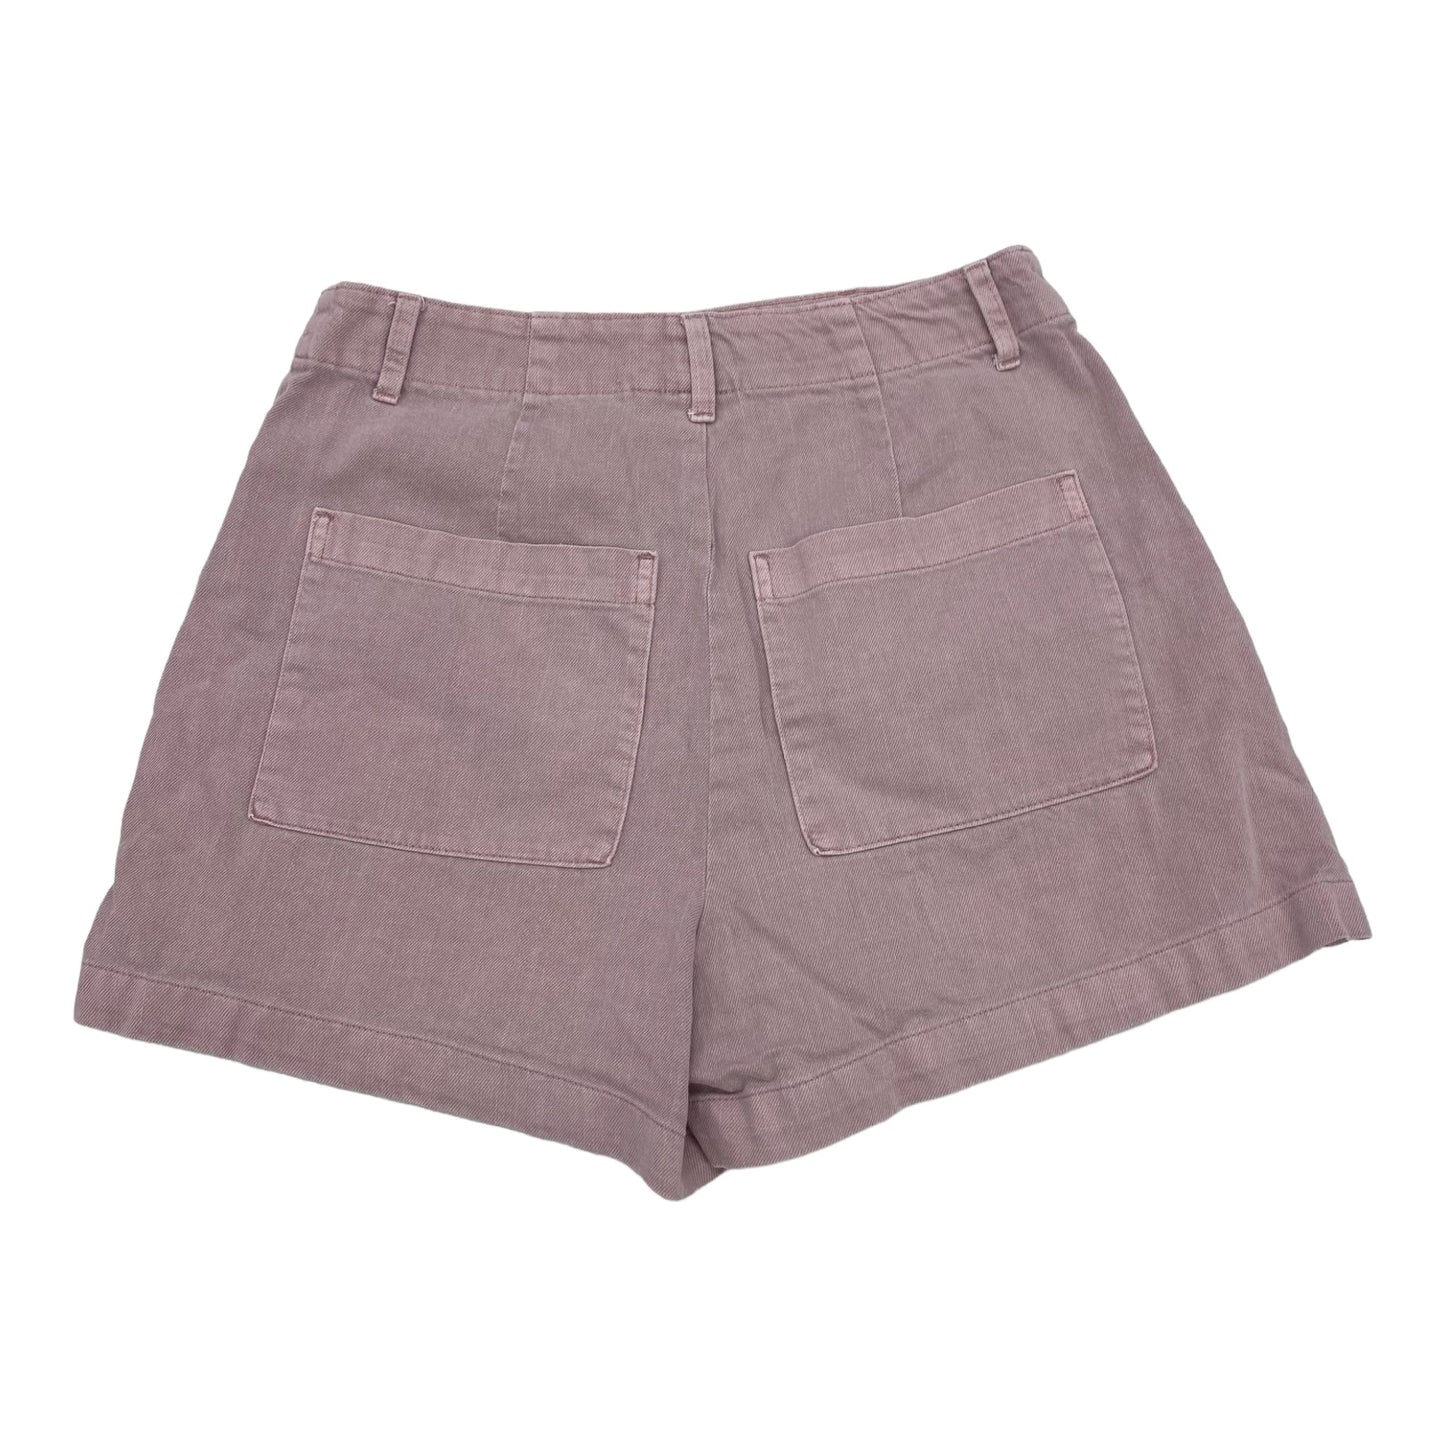 Pink Denim Shorts Universal Thread, Size 6